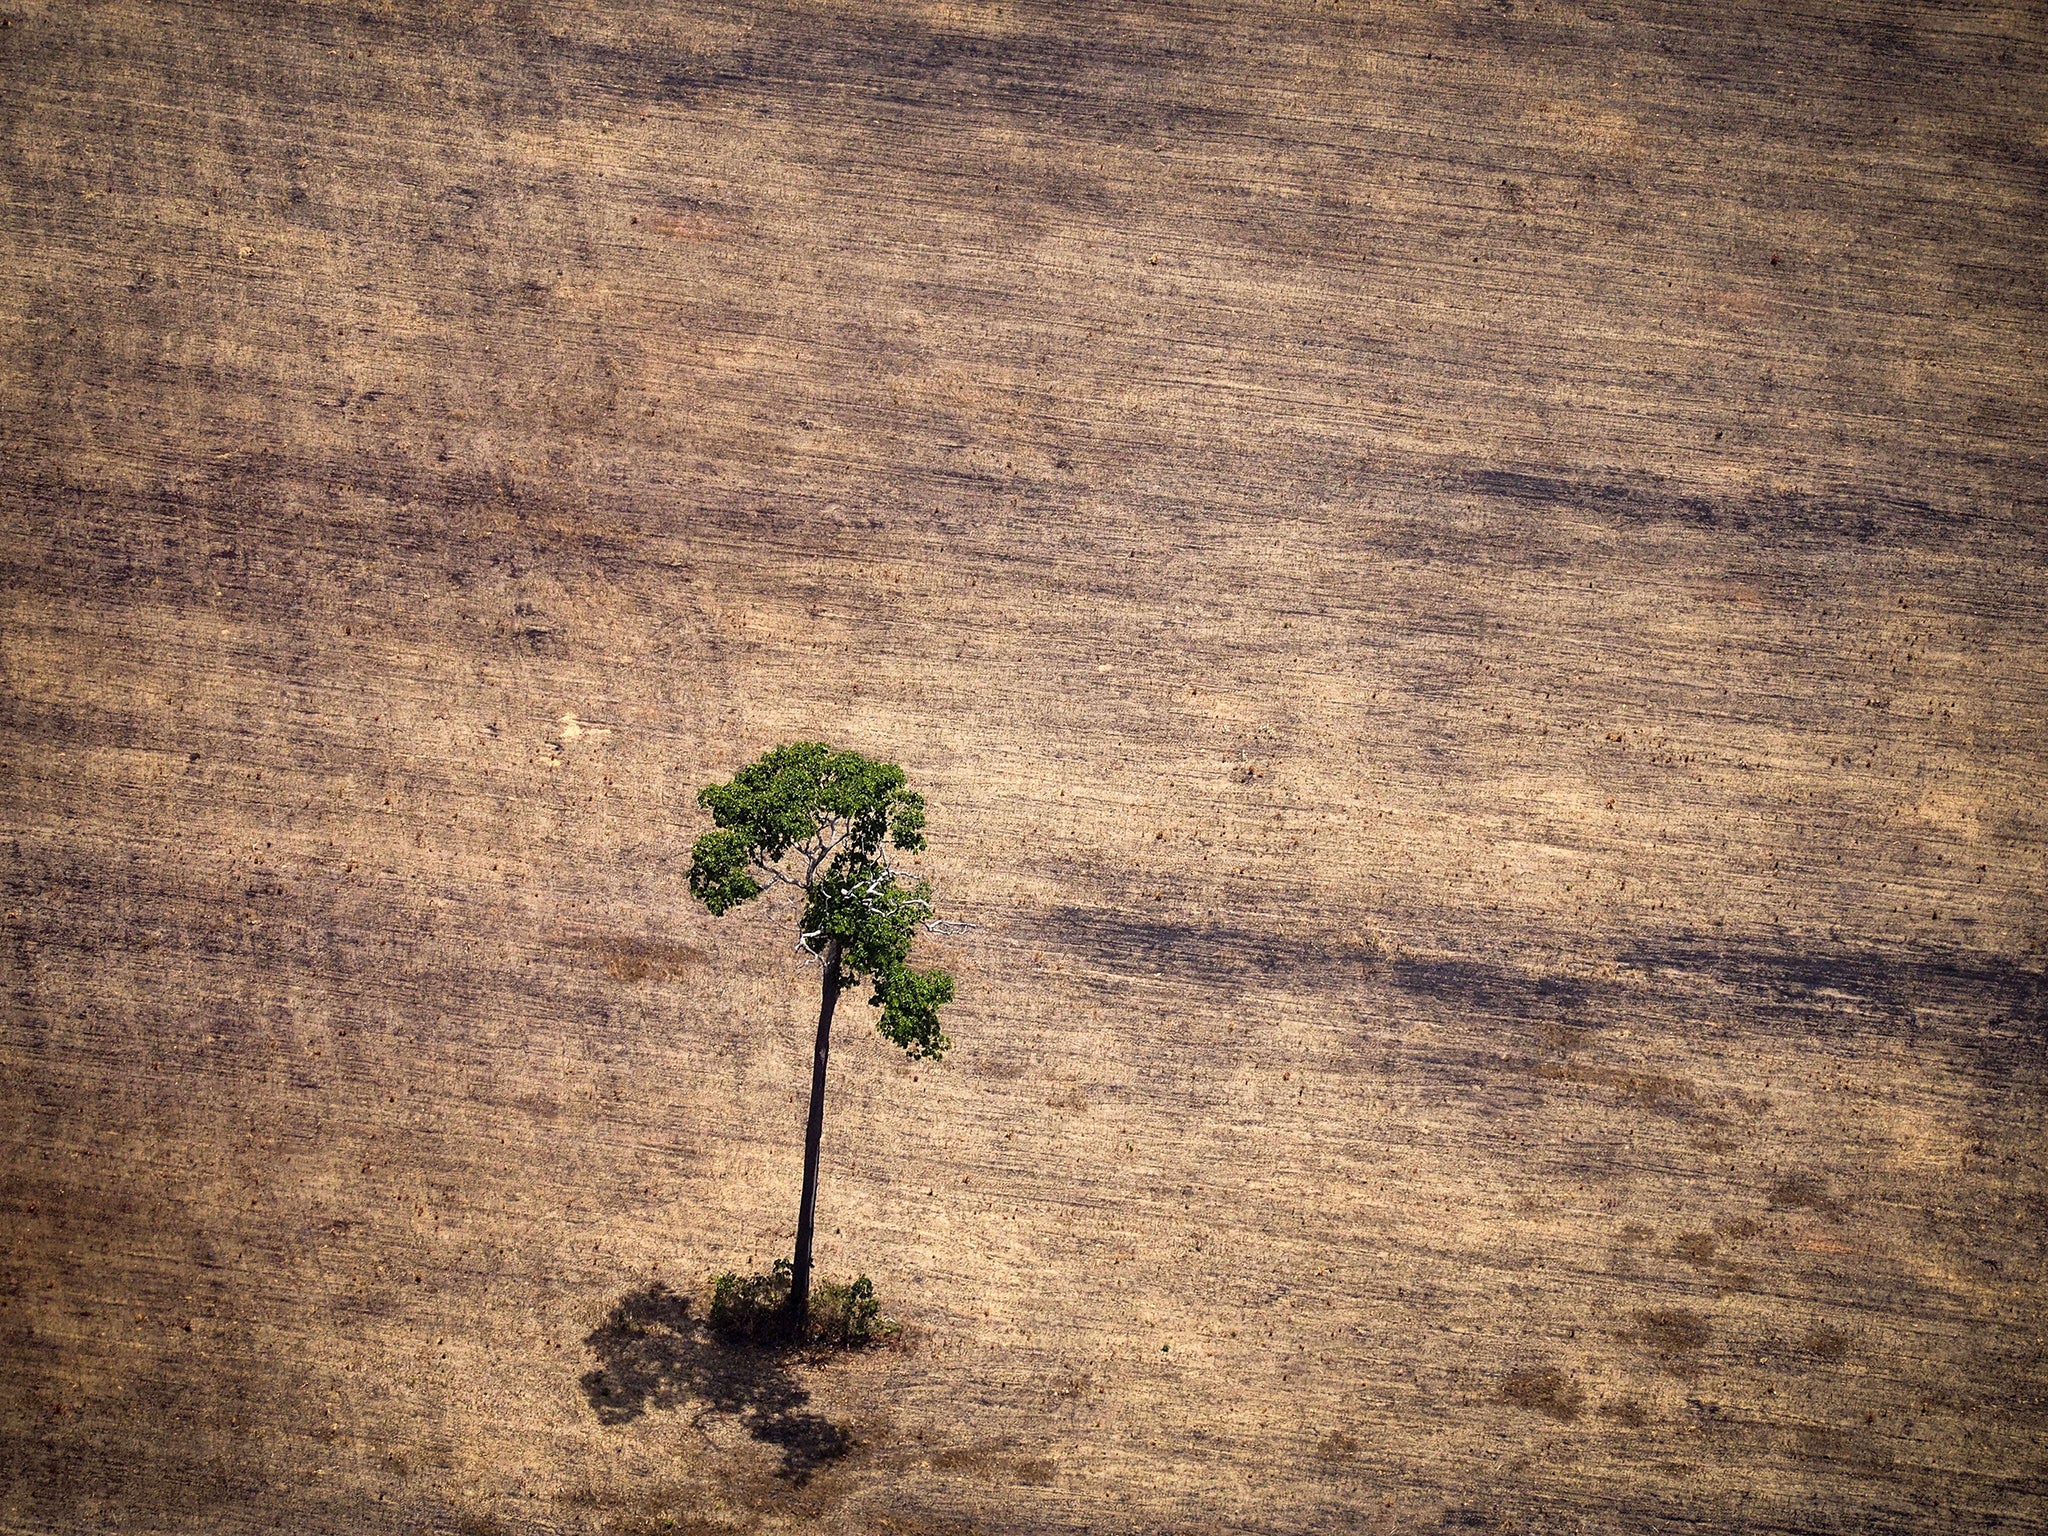 Deforestation in the Amazon rainforest